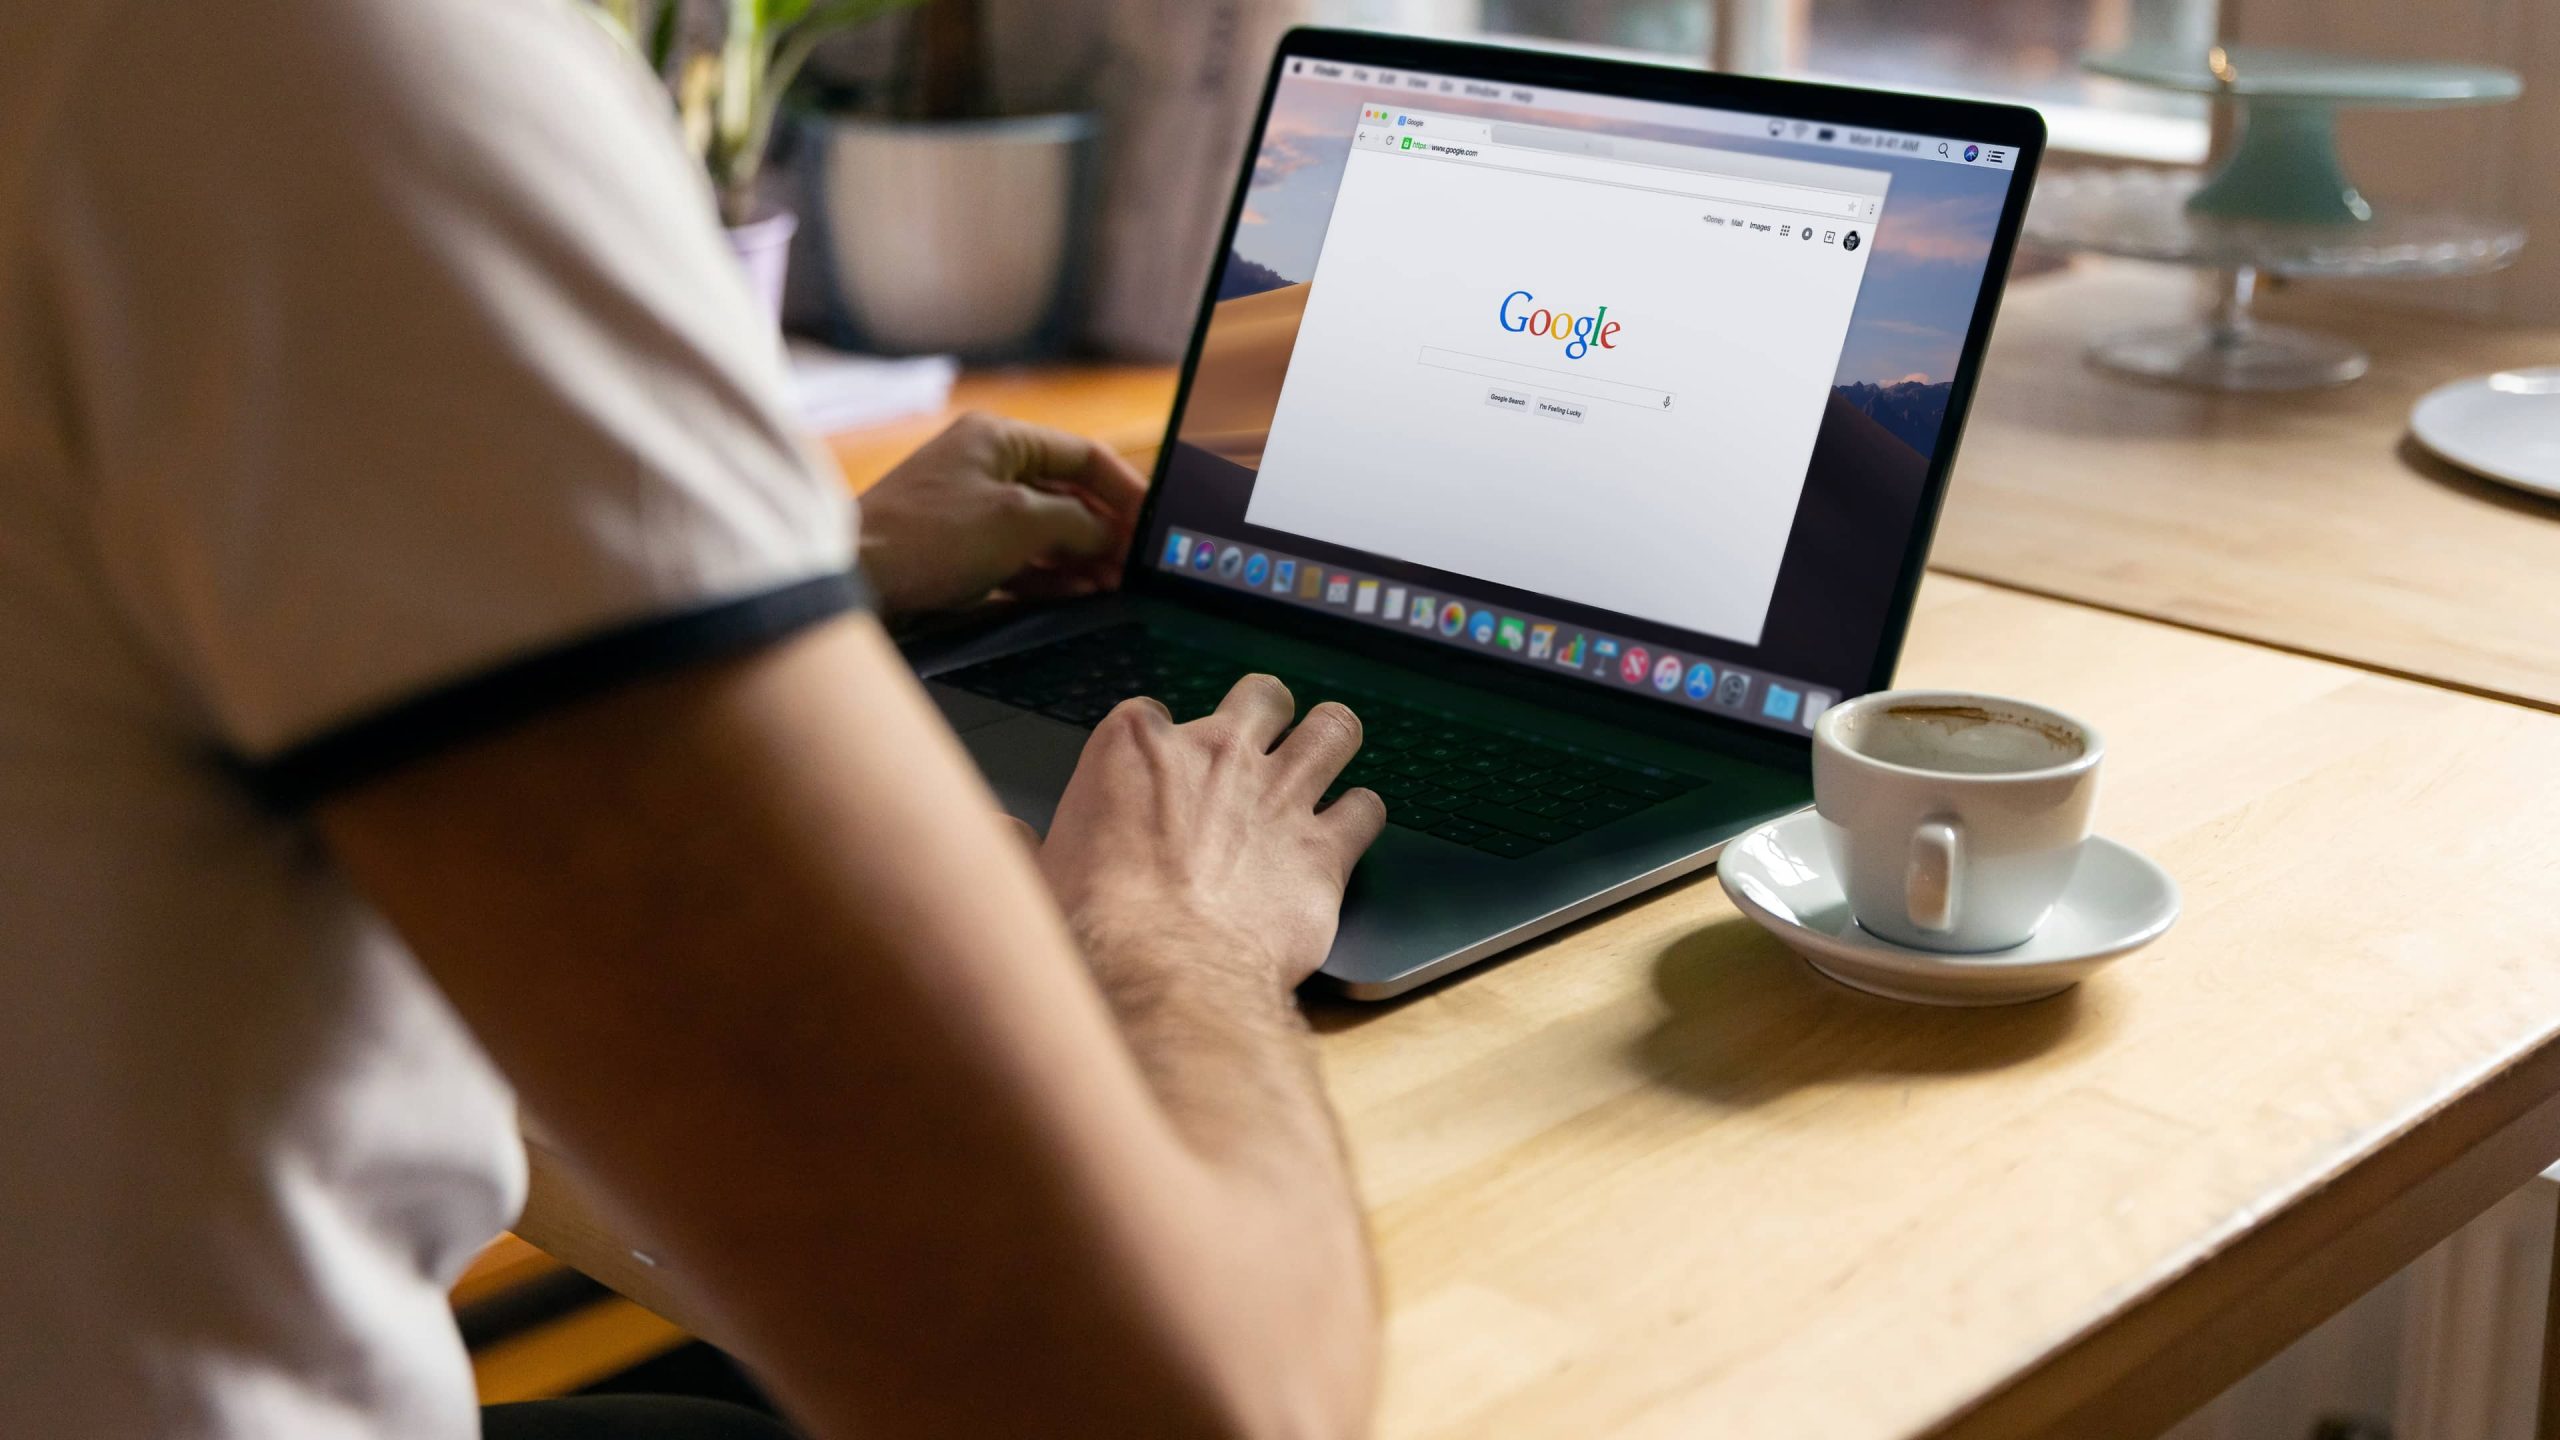 Google arama sayfasında çalışan Chrome tarayıcıyla bir MacBook Pro'nun önünde oturan genç bir erkeği arkadan gösteren bir yaşam tarzı fotoğrafı